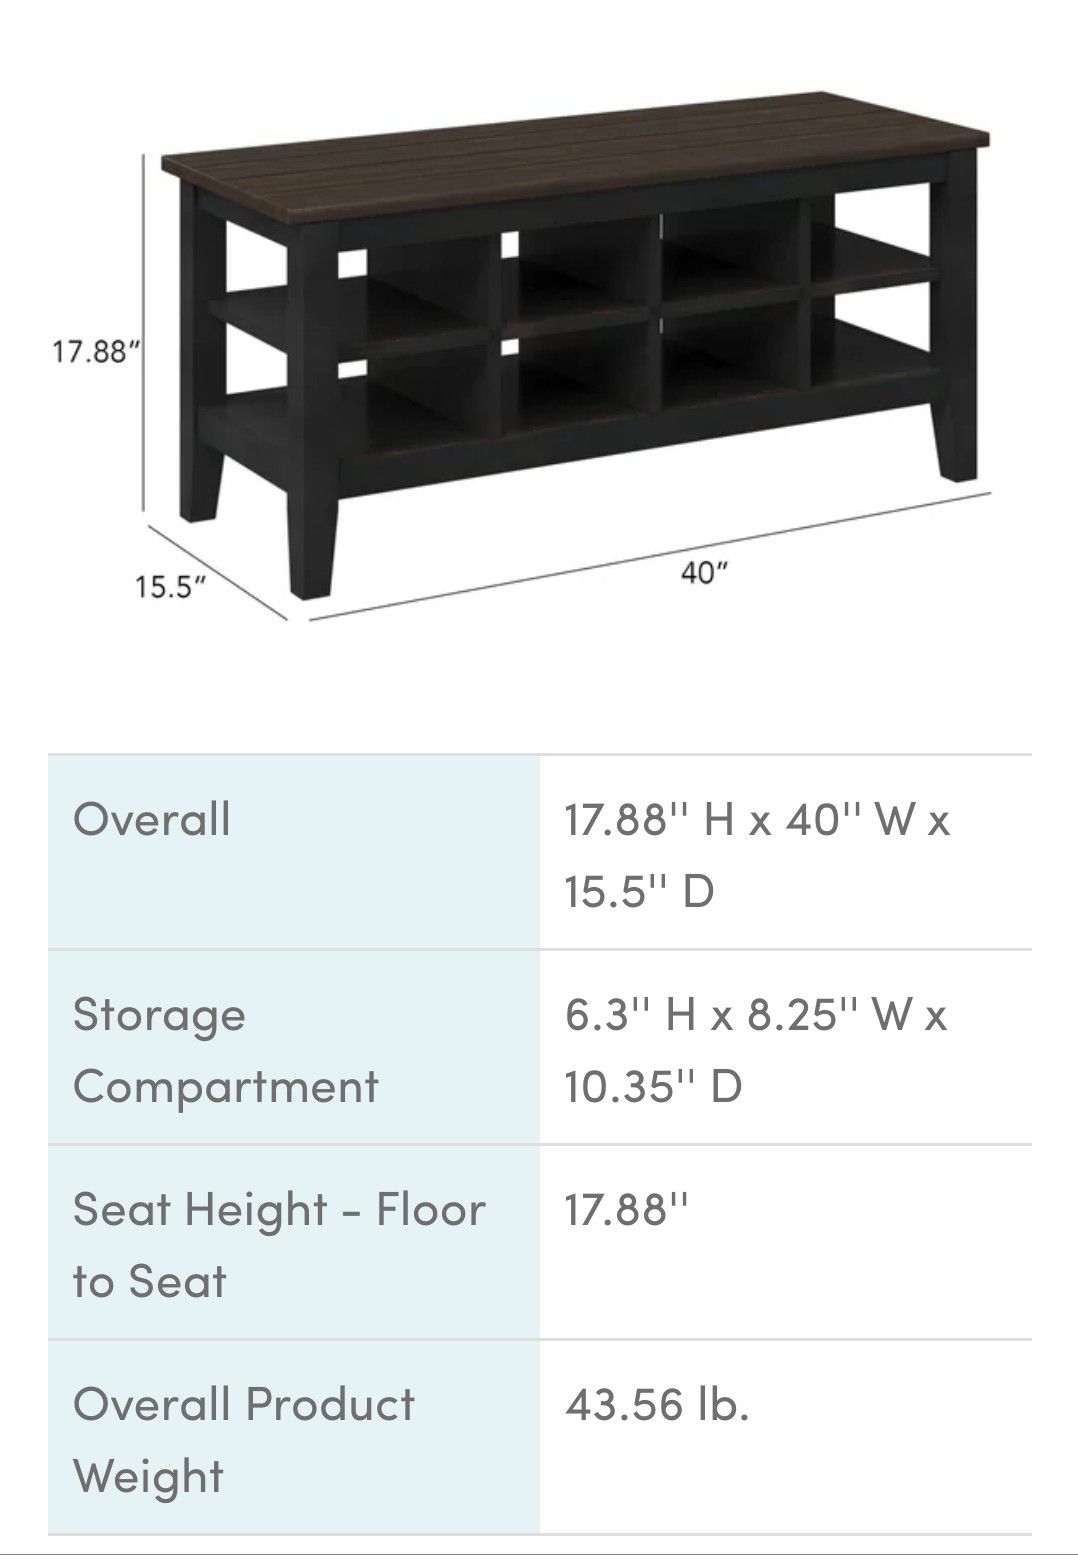 Brand New Distressed Black Cubby Storage Shelf